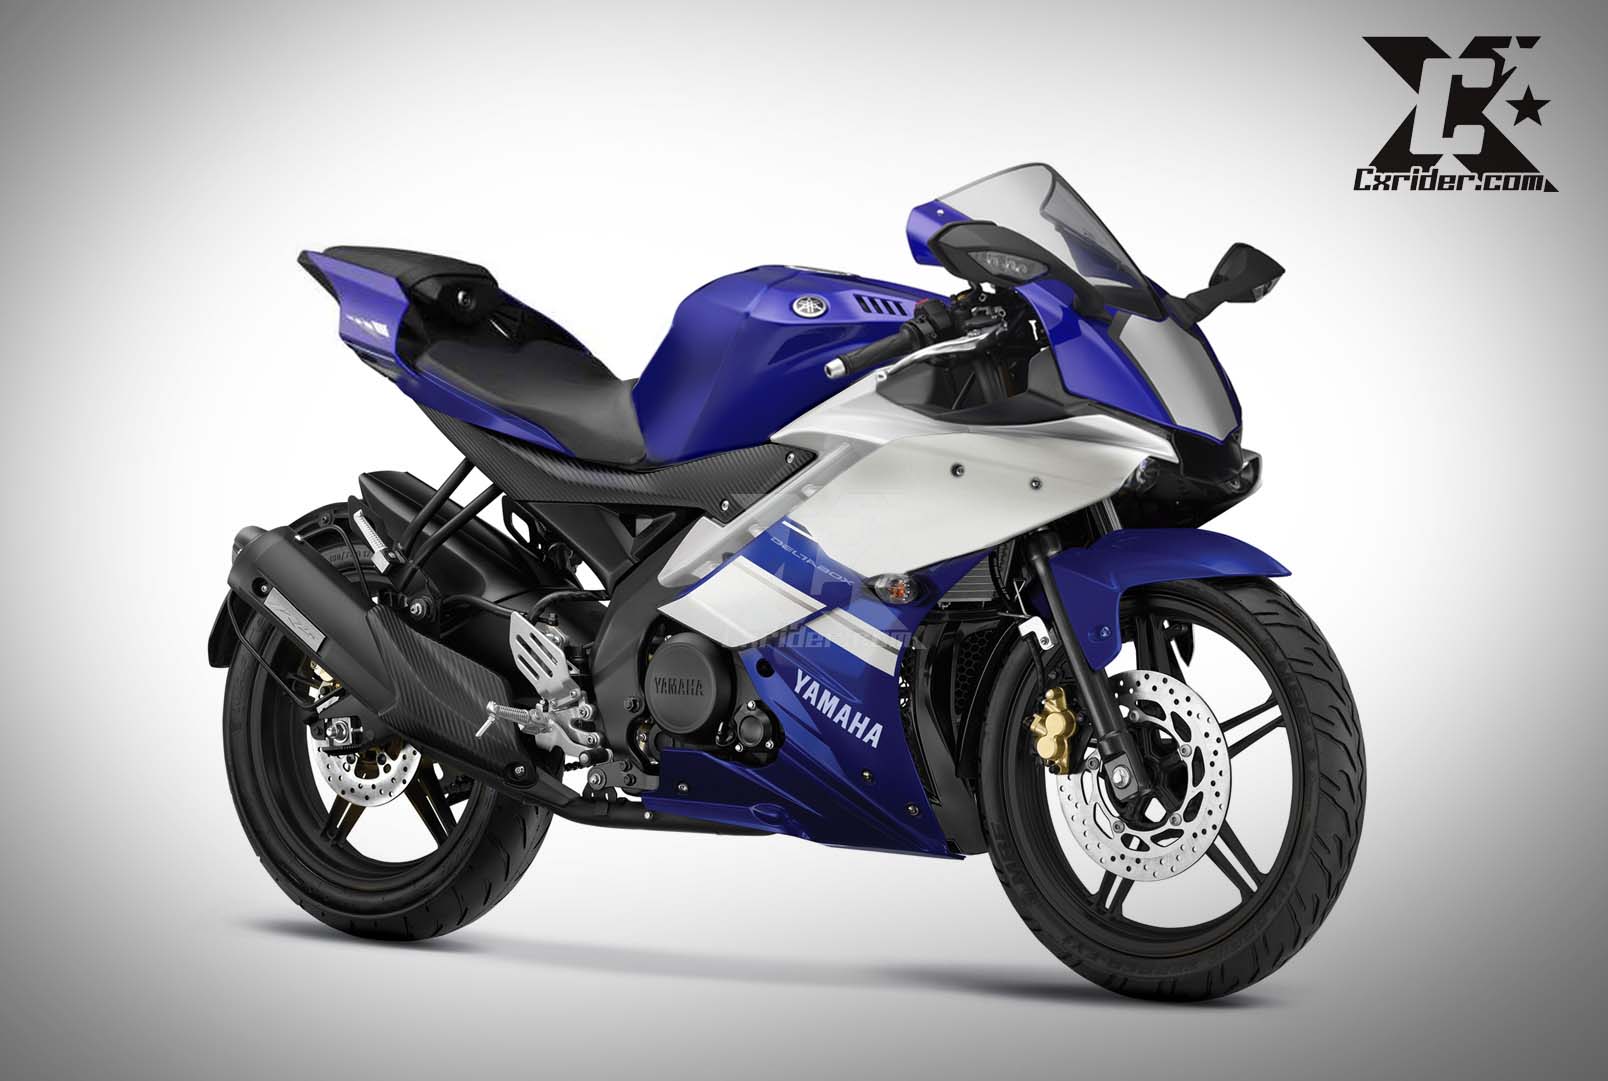 Konsep Modifikasi Yamaha R15 Bodykit Yamaha R1 2015 Cxridercom